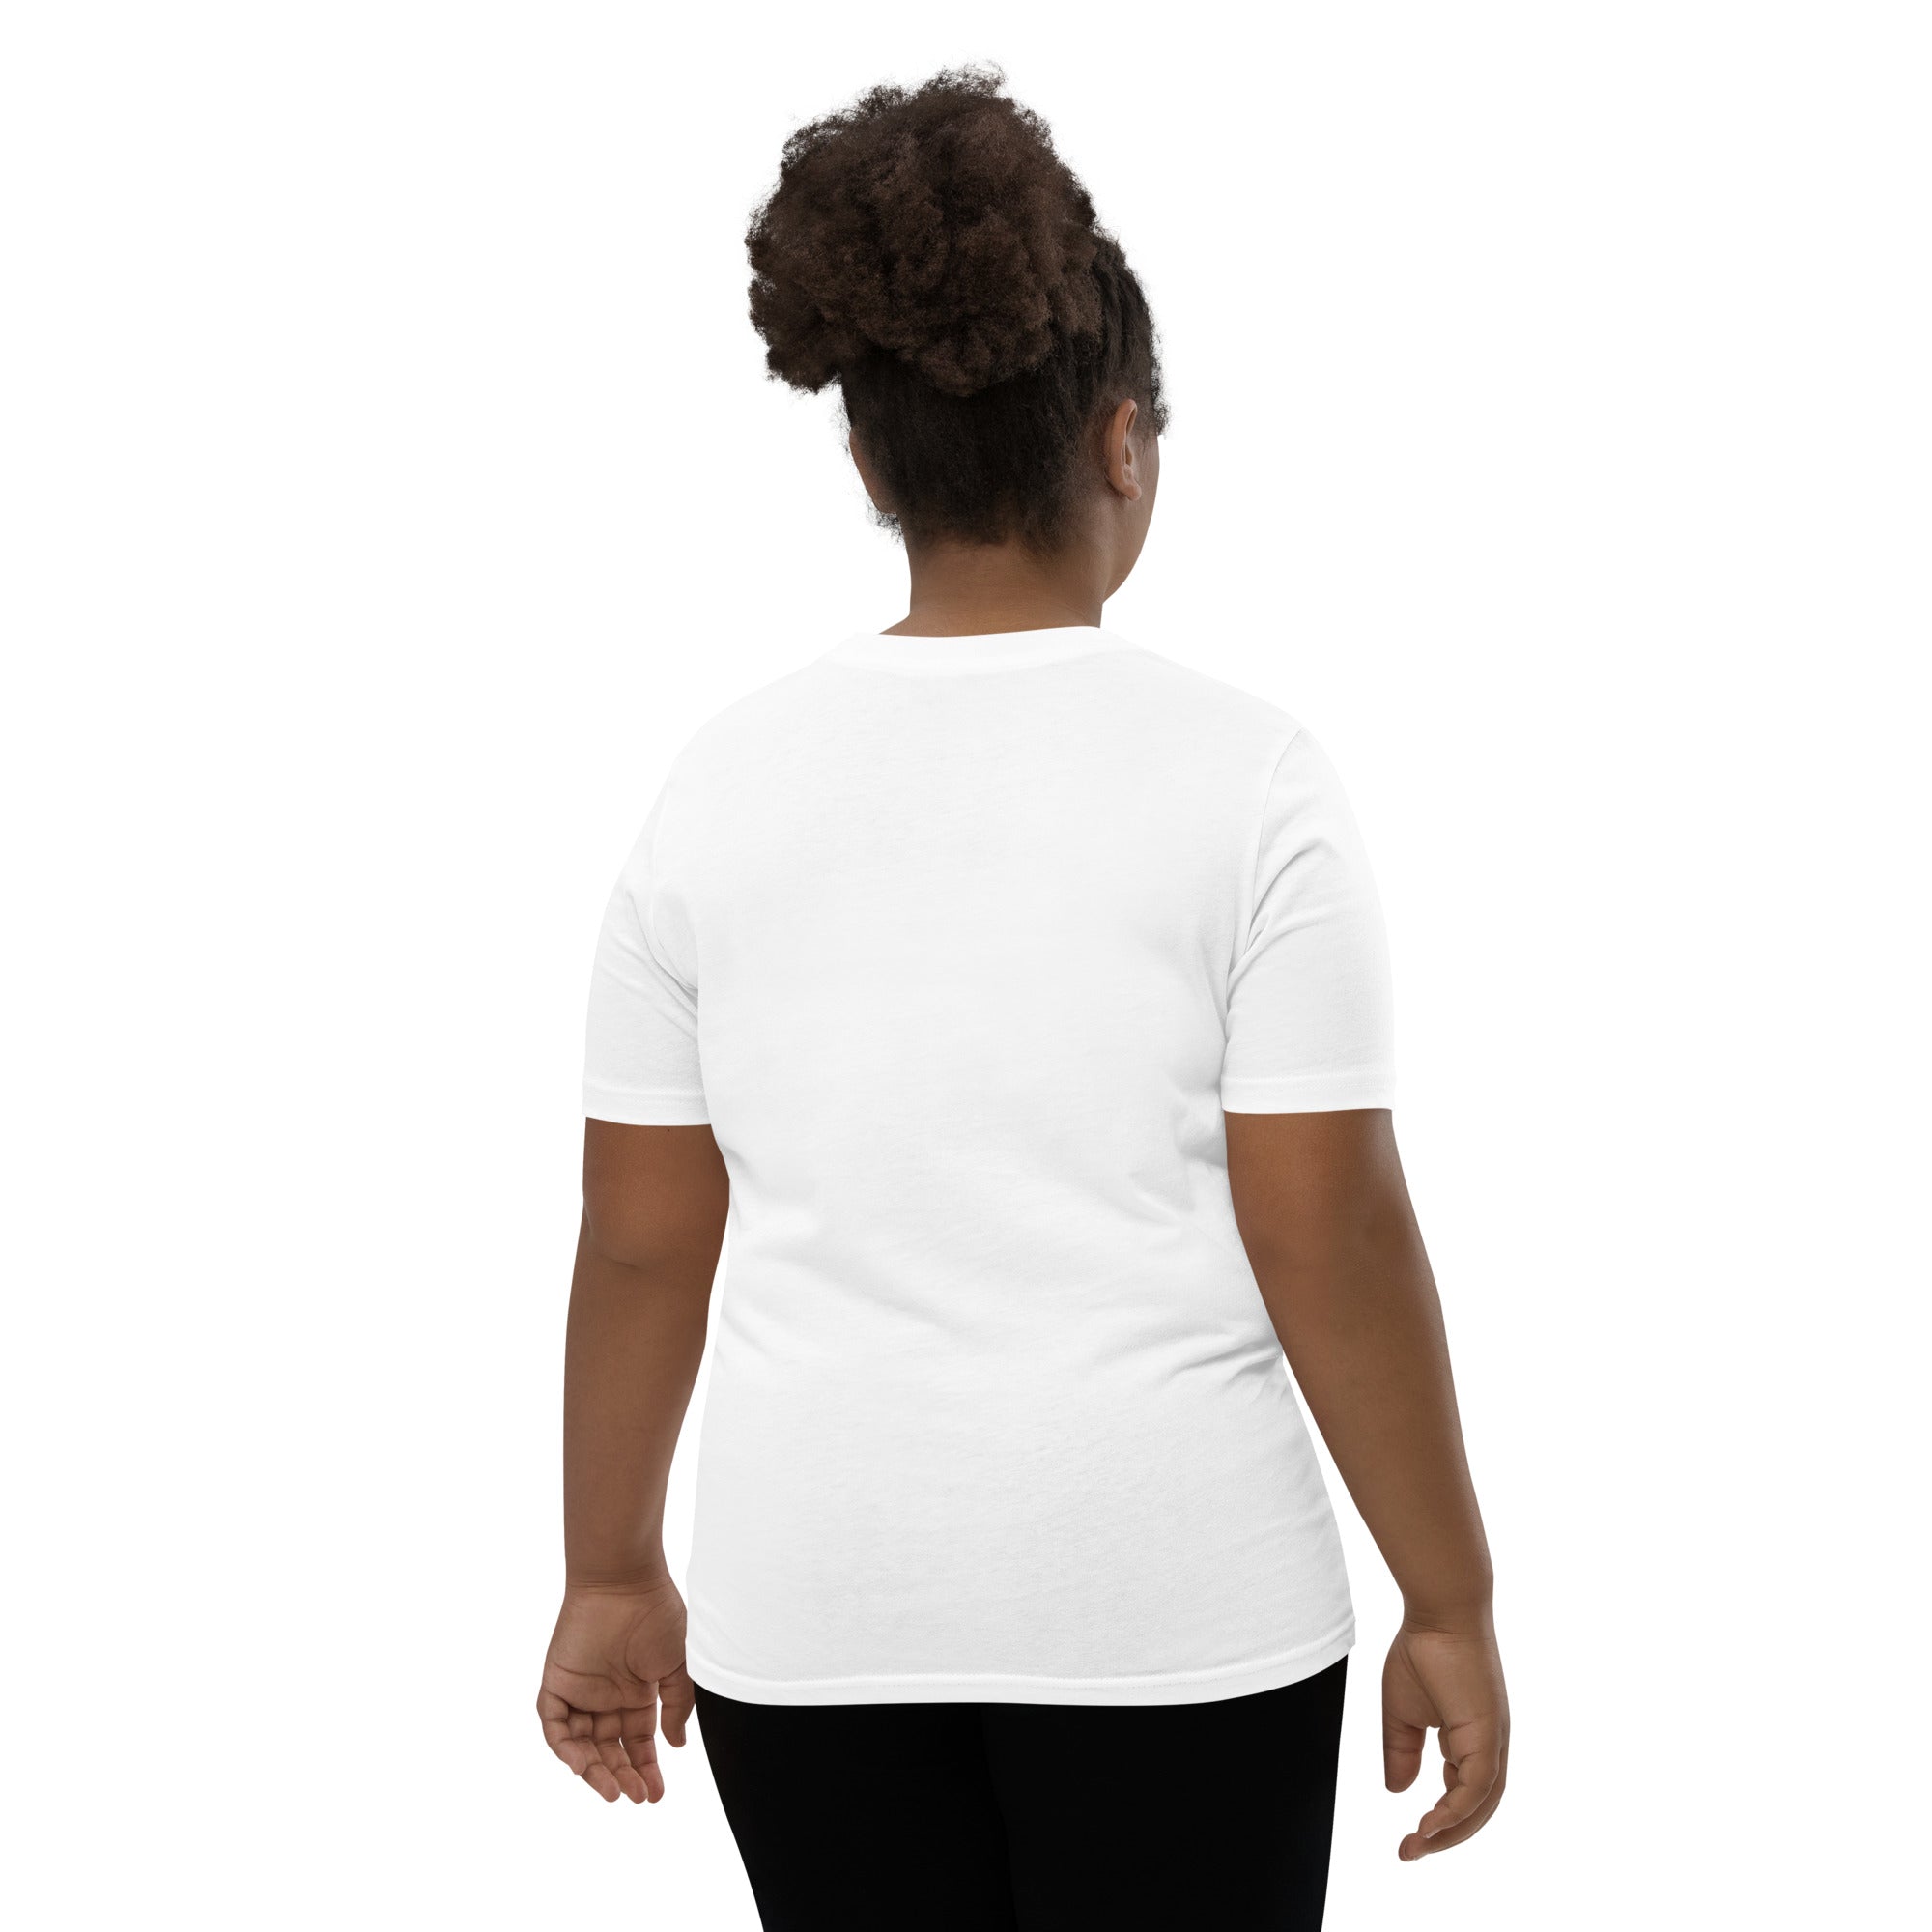 Ventura Logo R/B - White Youth Short Sleeve T-Shirt